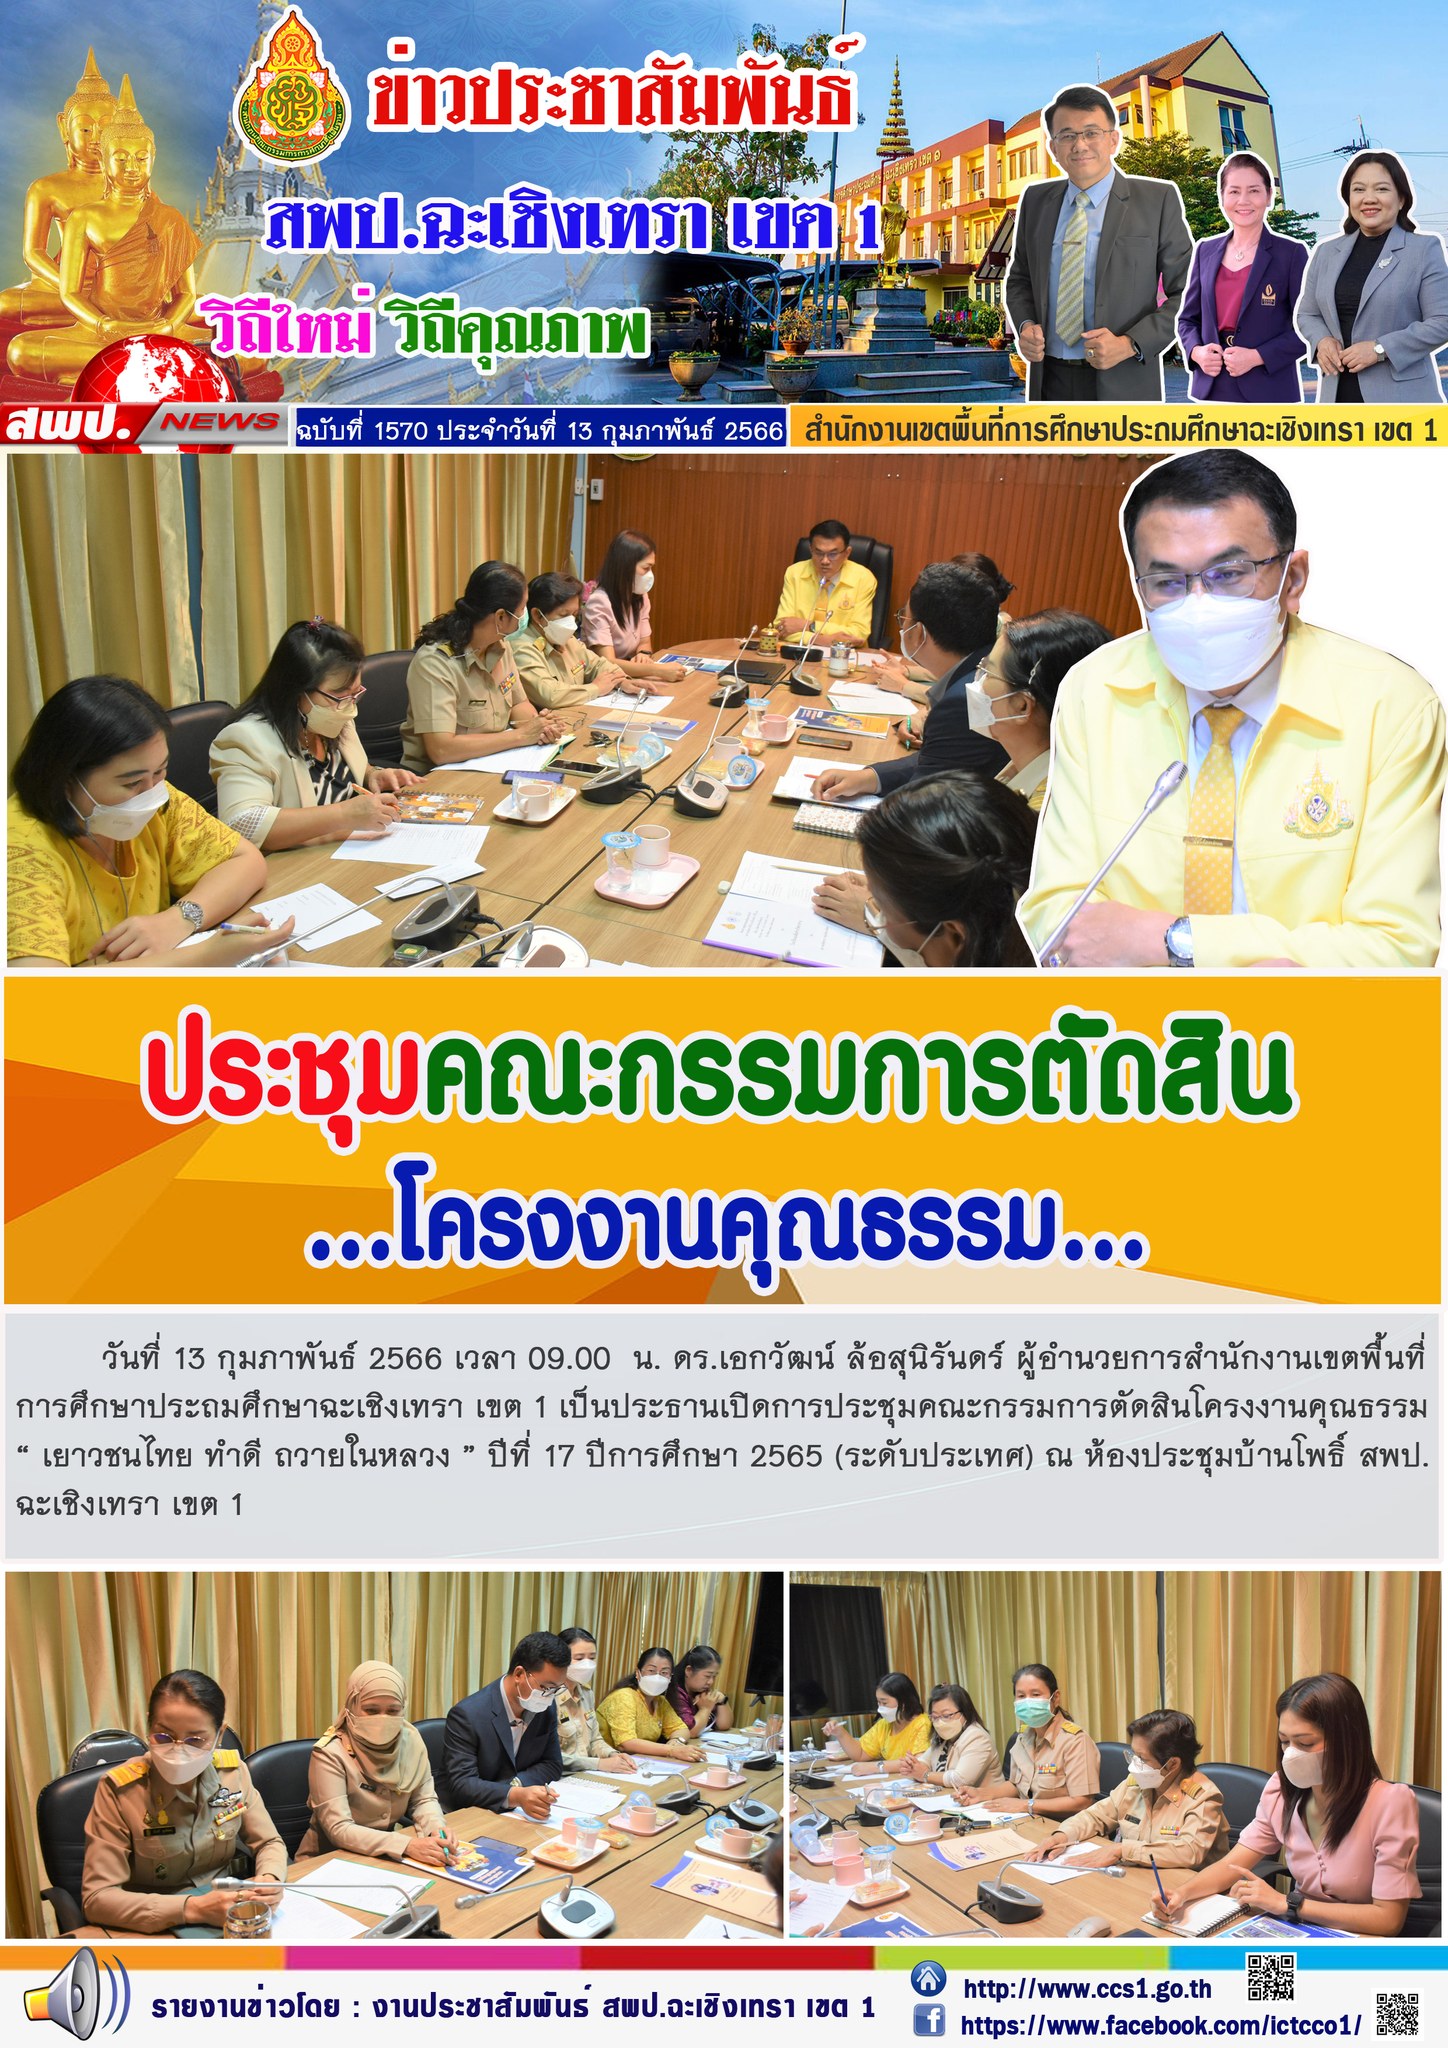 ประชุมคณะกรรมการตัดสินโครงงานคุณธรรม“ เยาวชนไทย ทำดี ถวายในหลวง ” ปีที่ 17 ปีการศึกษา 2565 (ระดับประเทศ)